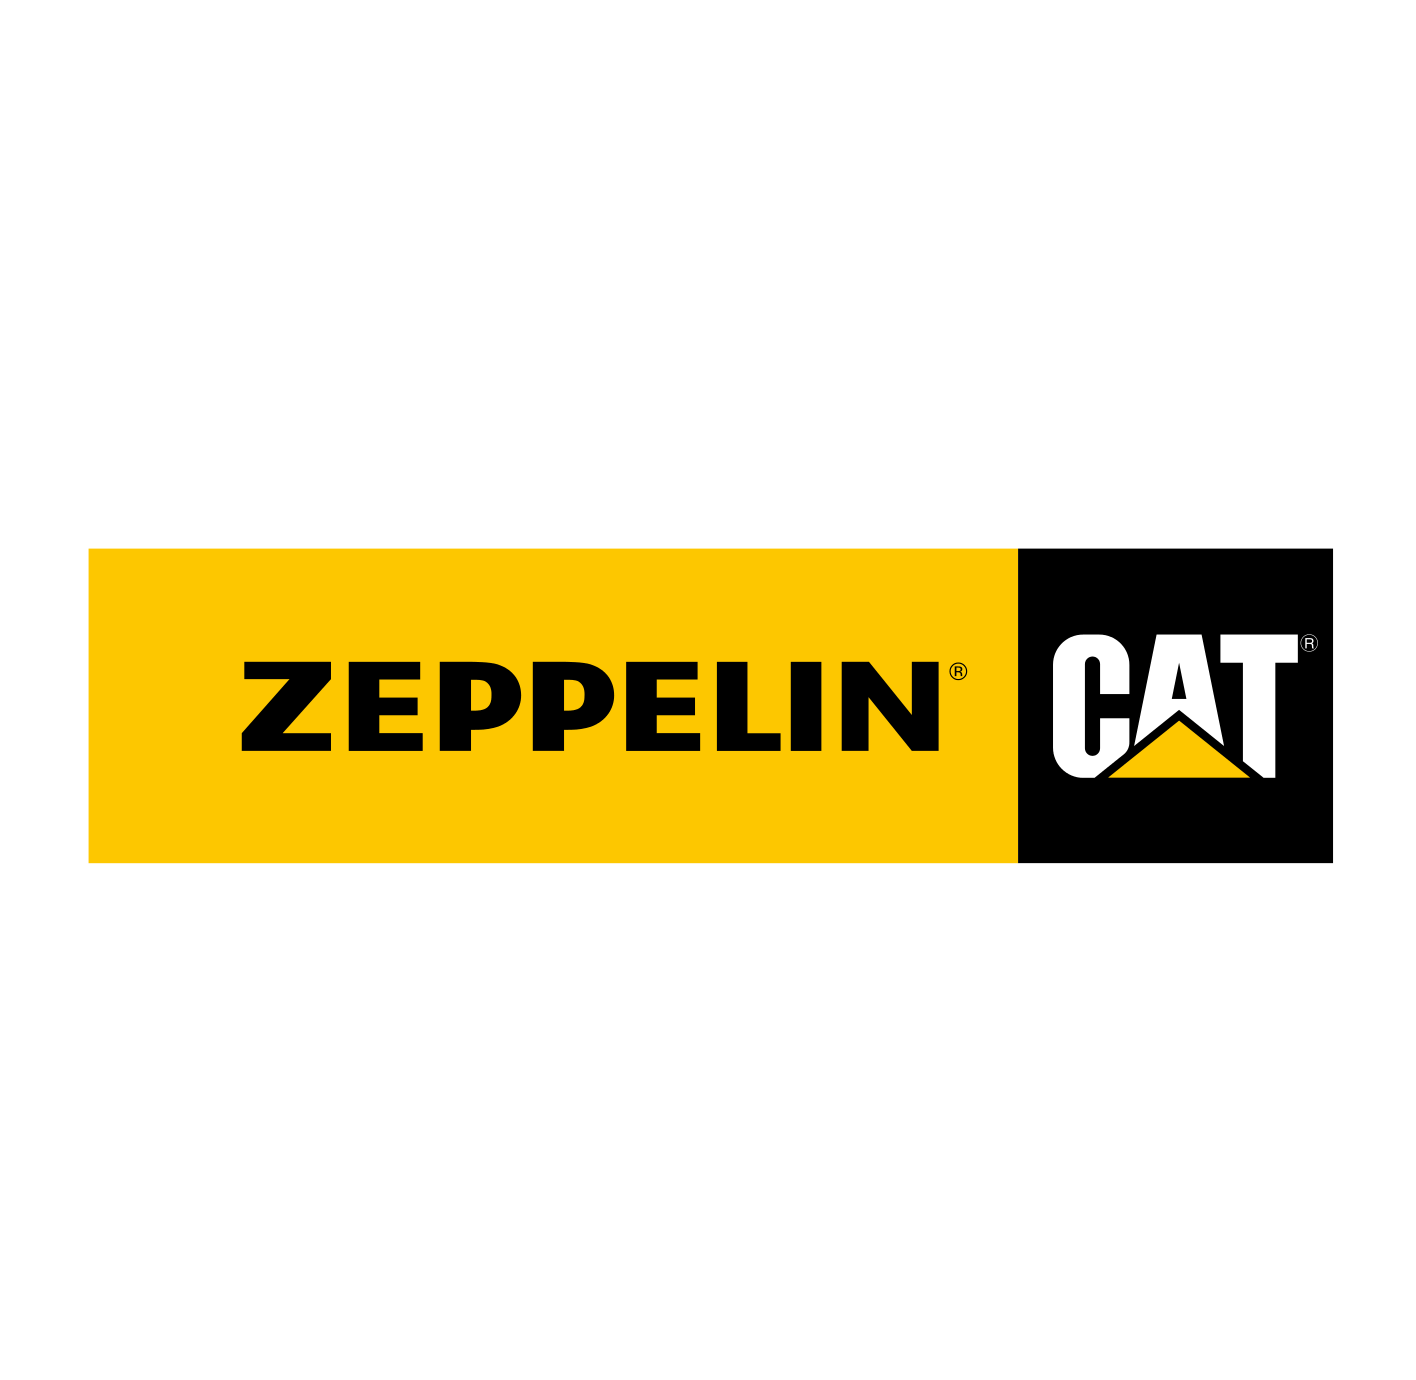 ZeppelinCAT